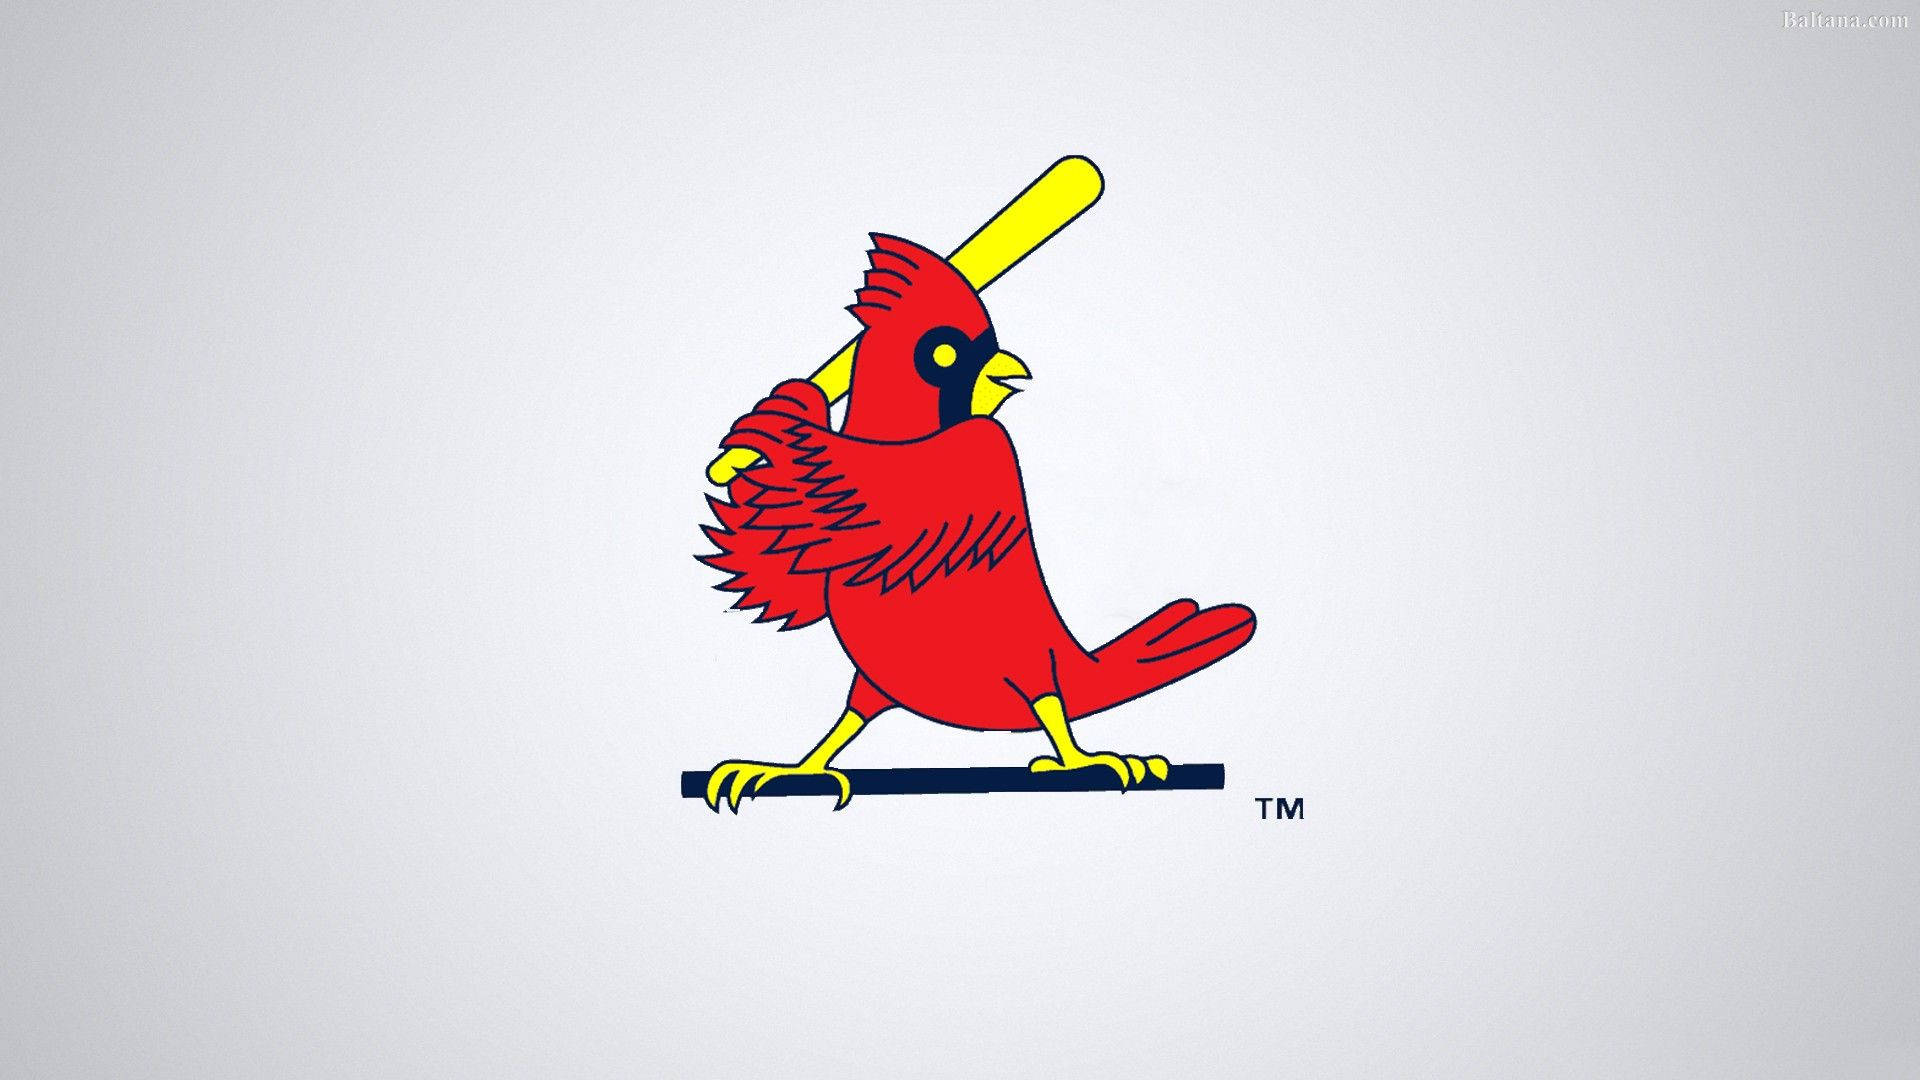 Retro cardinal batting logo  St louis cardinals baseball, St